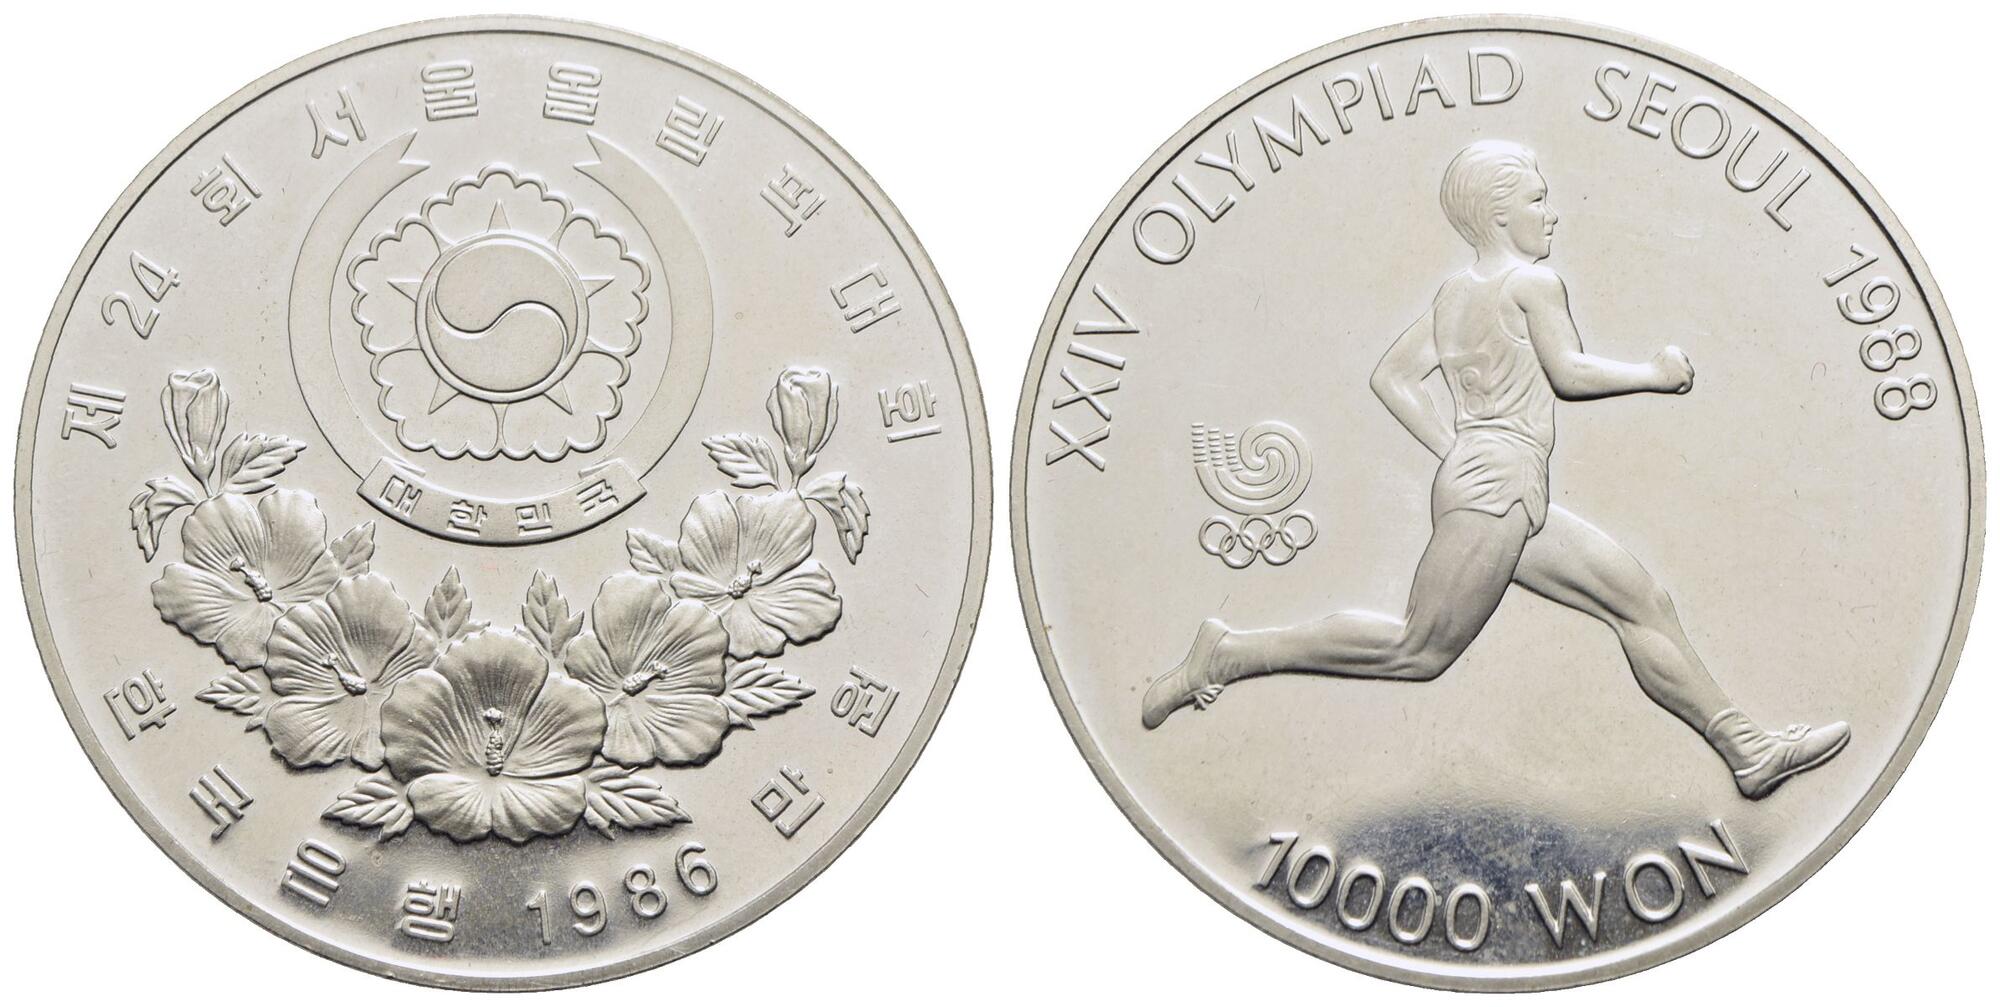 Ms! Bu New 20 Pesos Coin 500 Years Anniversary Veracruz Straight From The Mint 